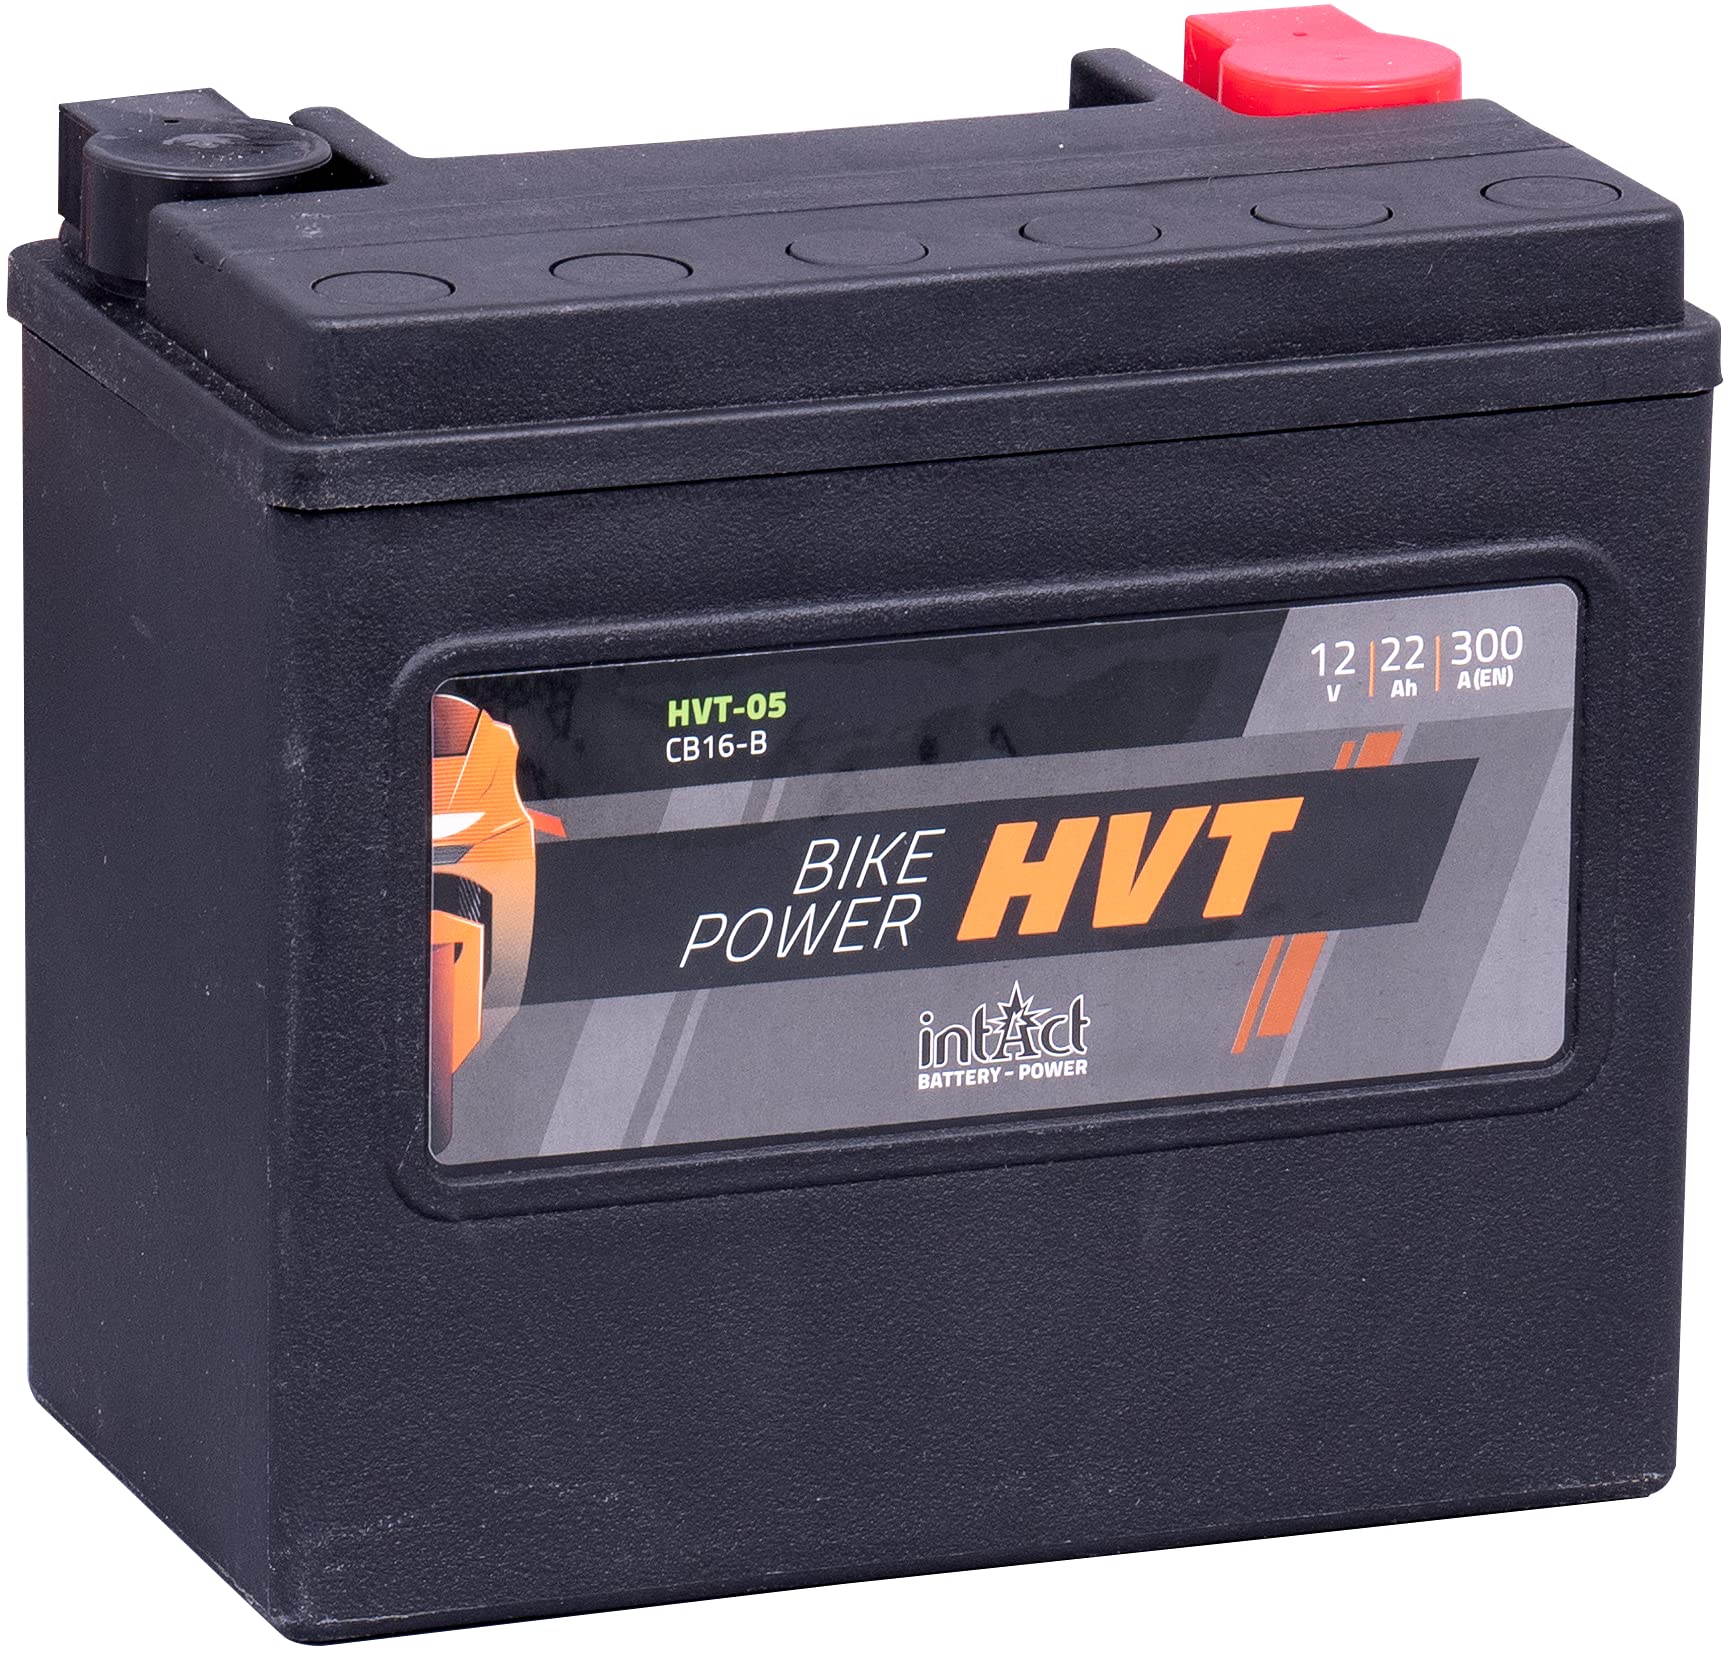 intAct - HVT MOTORRADBATTERIE | Batterie für Roller, Motorrad, Rasentraktor. Wartungsfreier & auslaufsicherer Akku. | HVT-05, CB16-B, 65991-82B, 12V Batterie, 22 AH (c20), 300 A (EN) | Maße: 176x101x156mm